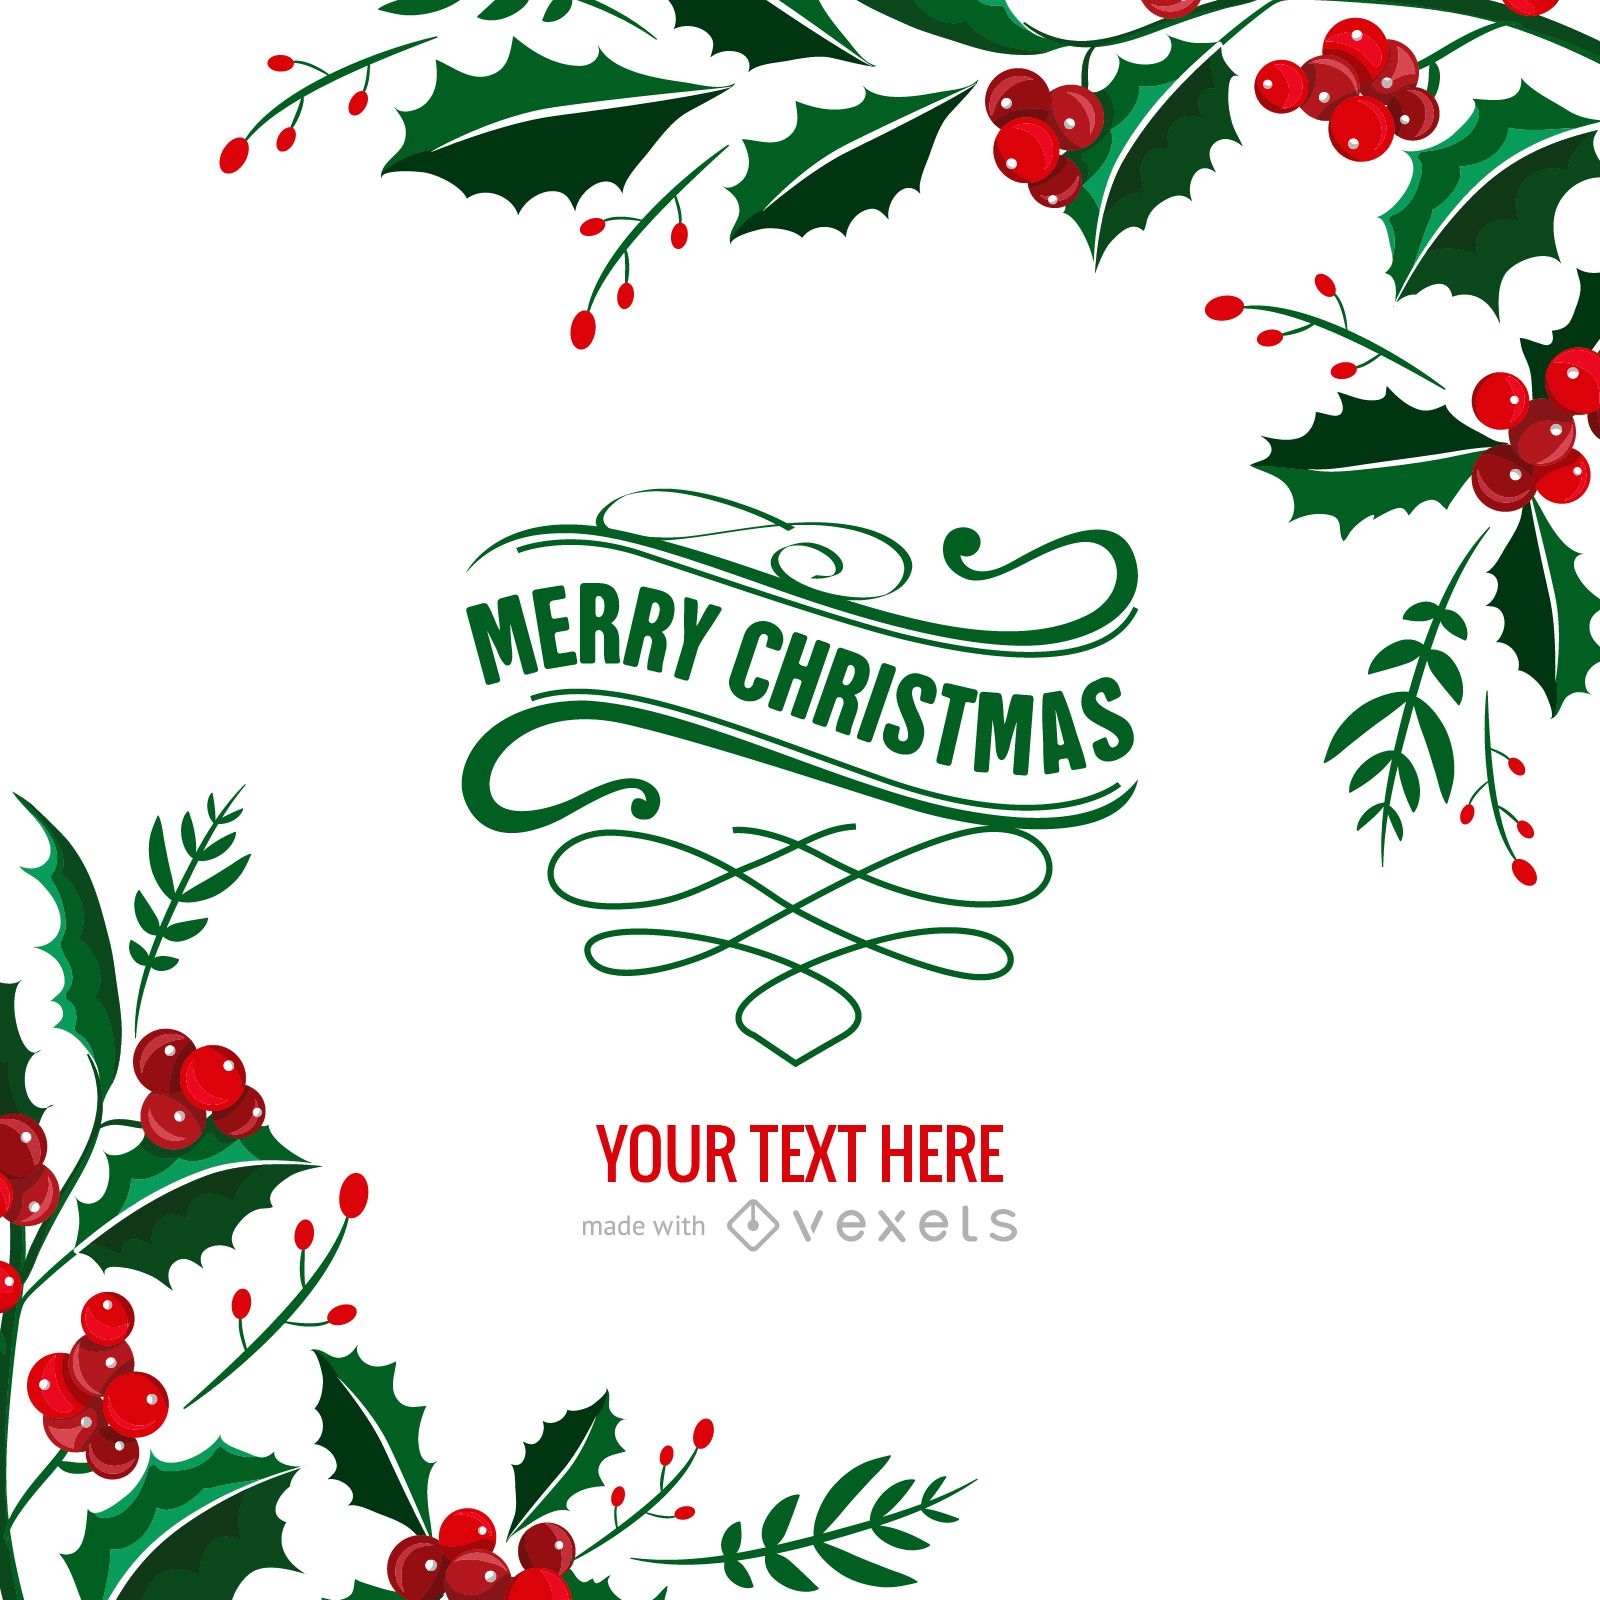 mistletoe-christmas-card-maker-editable-design